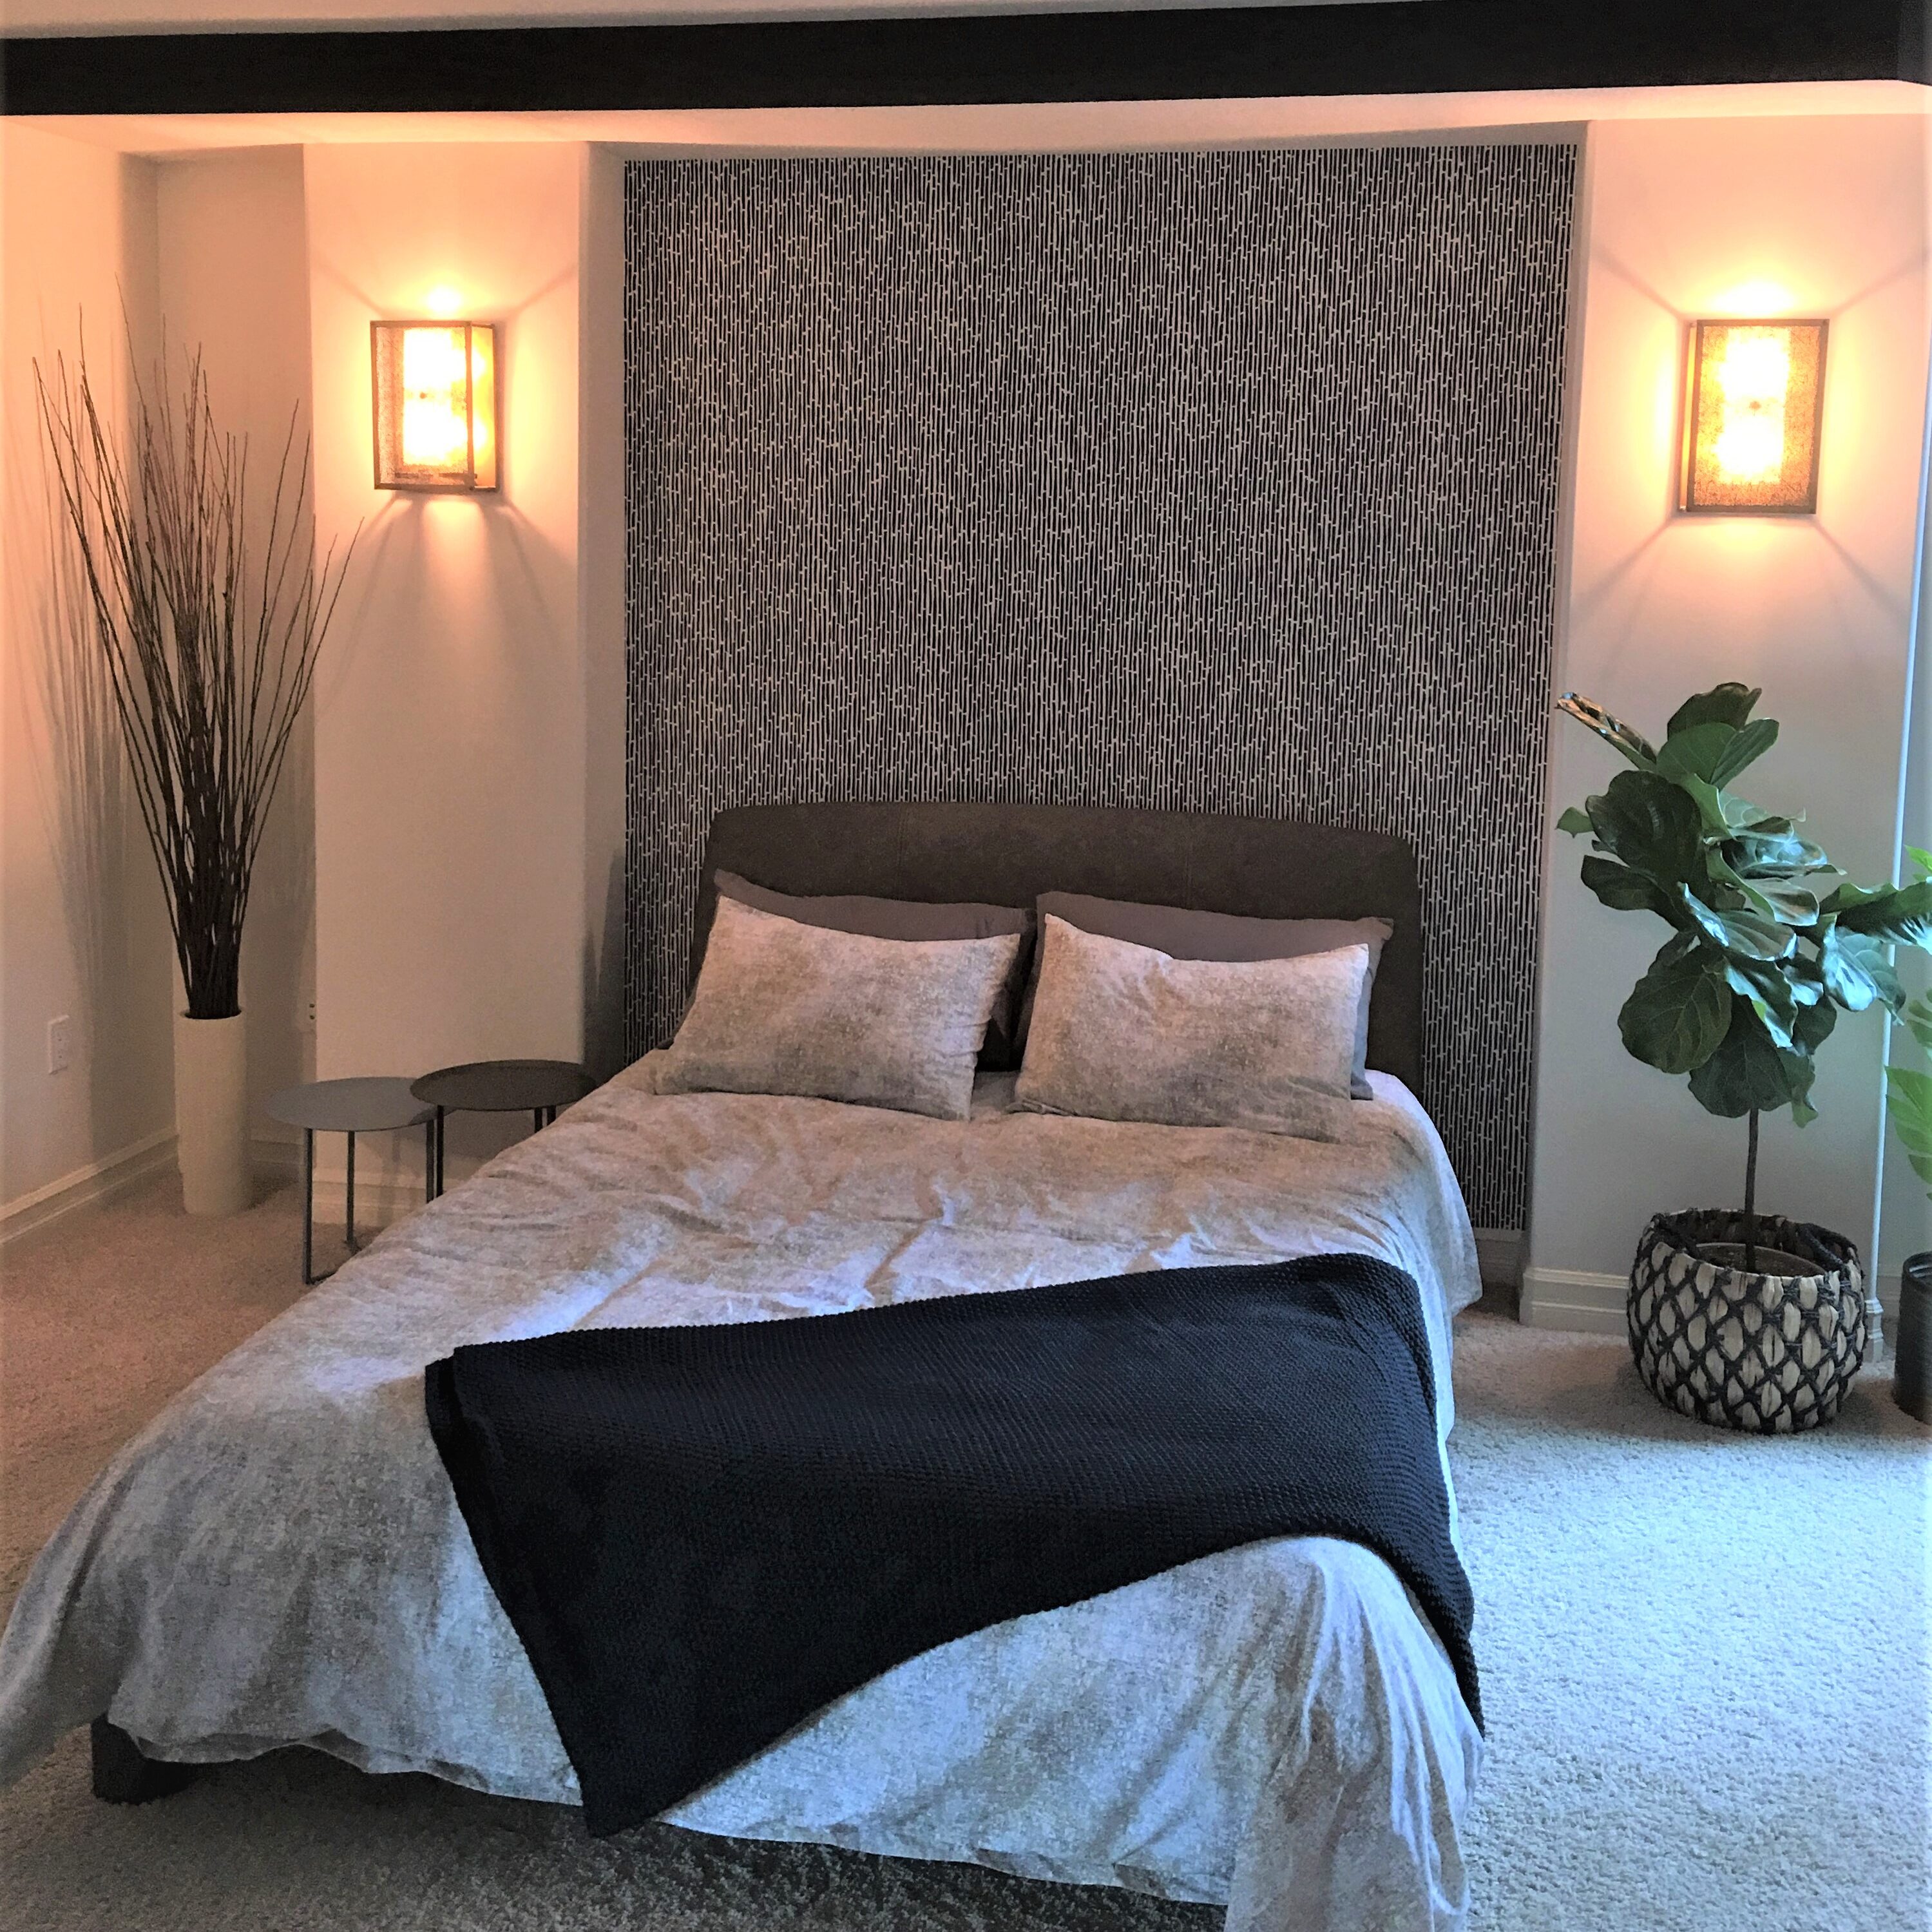 Bedroom / Textiles / Wallpaper / Decor